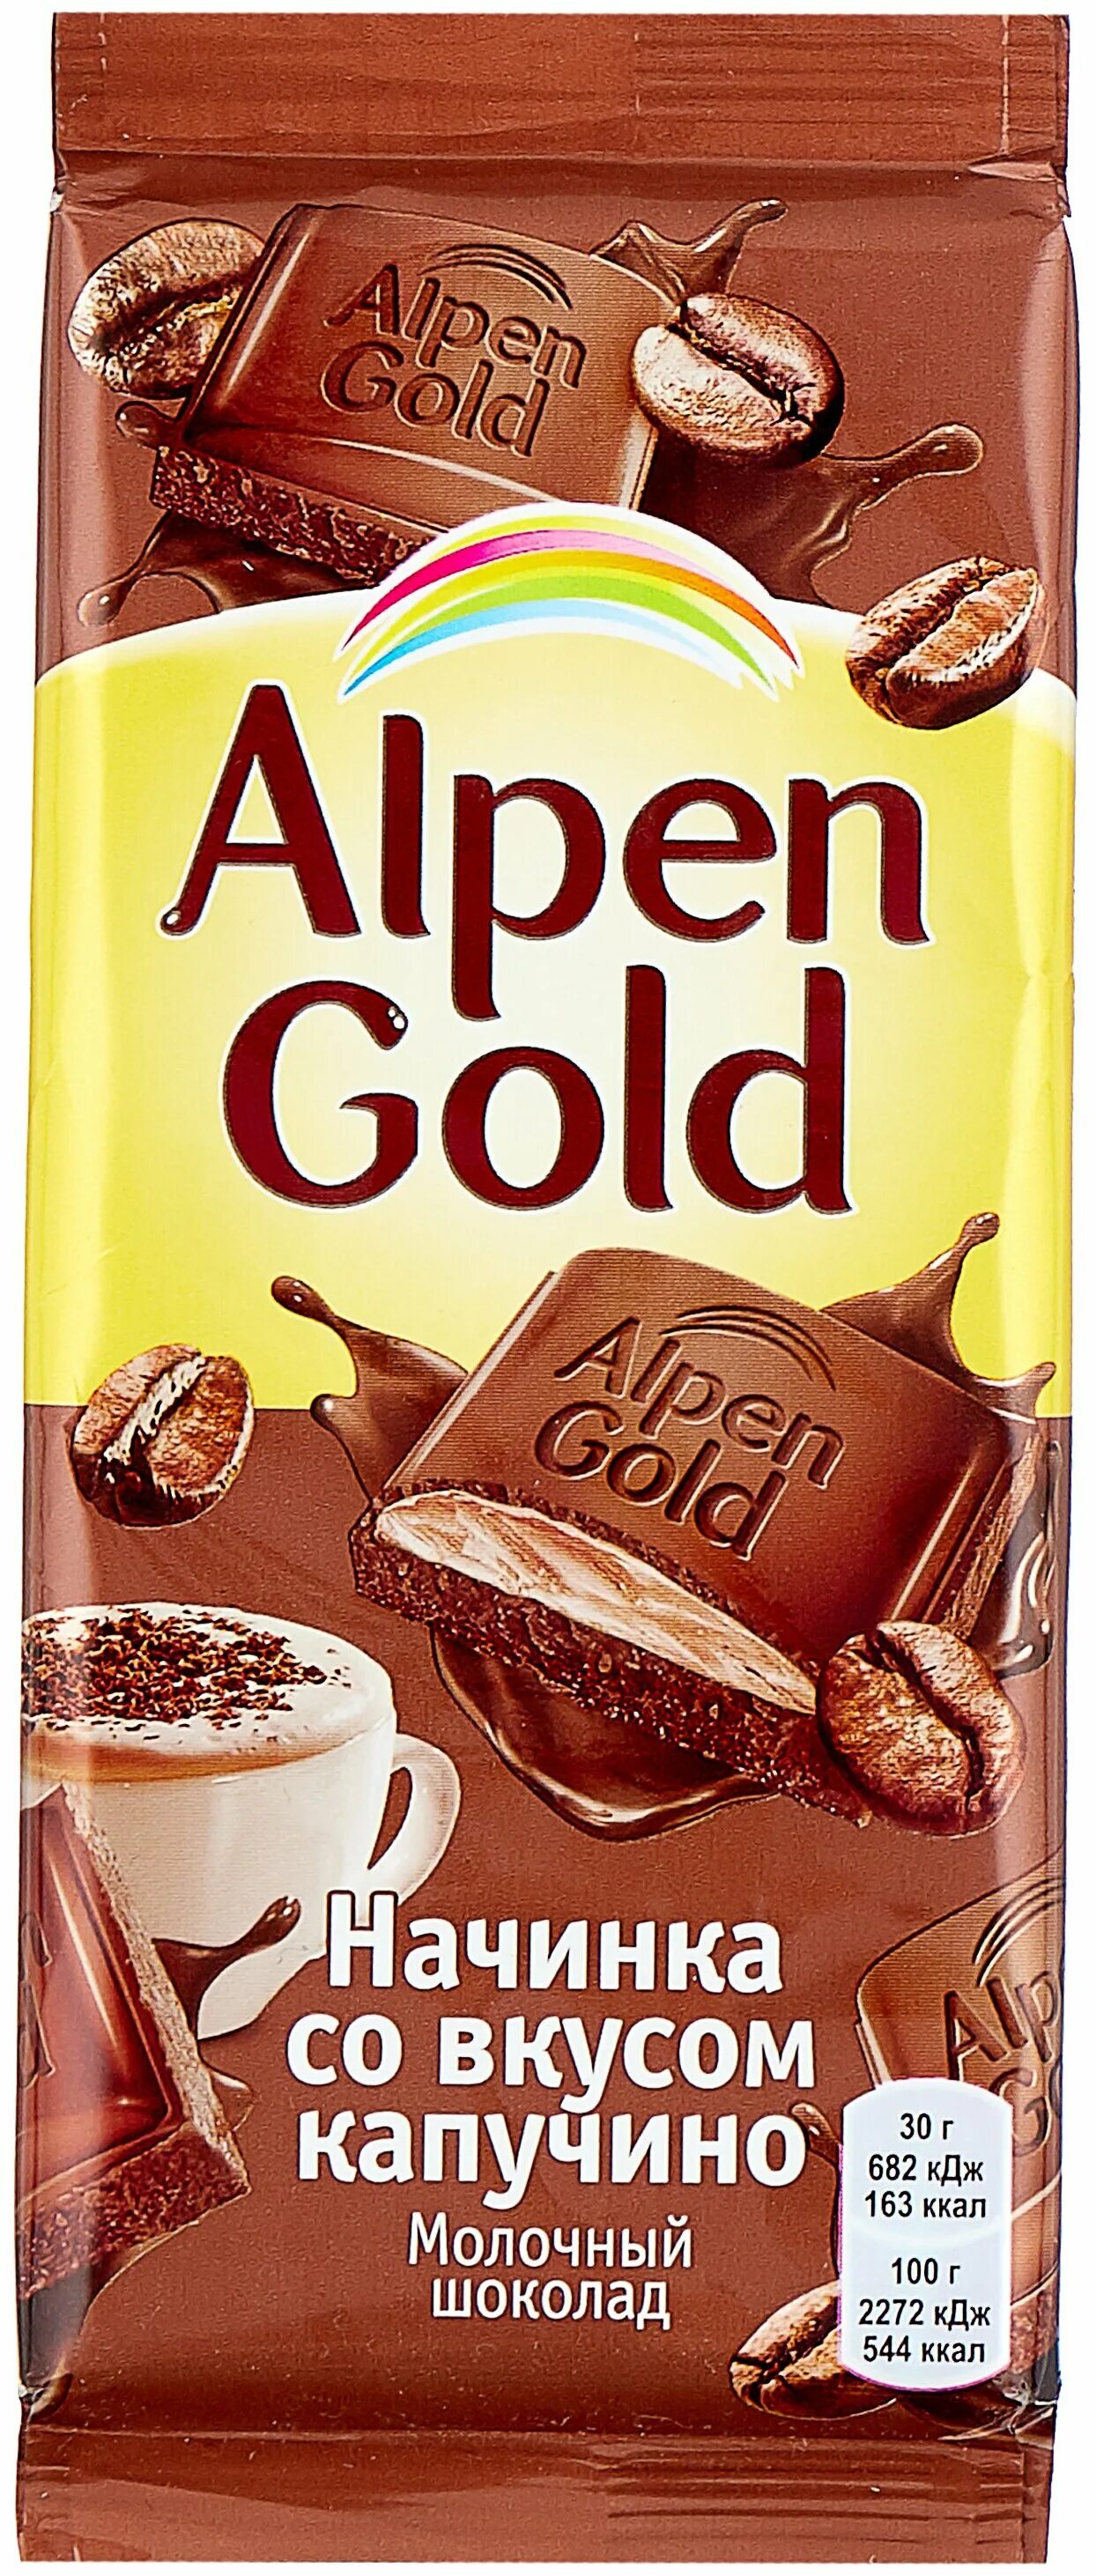 Шоколад Alpen Gold 90гр молочный капучино. Шоколад Alpen Gold капучино 85 г.. Шоколад Alpen Gold молочный 85 г. Шоколад Альпен Гольд капучино 90г. Анпенгольд шоколад